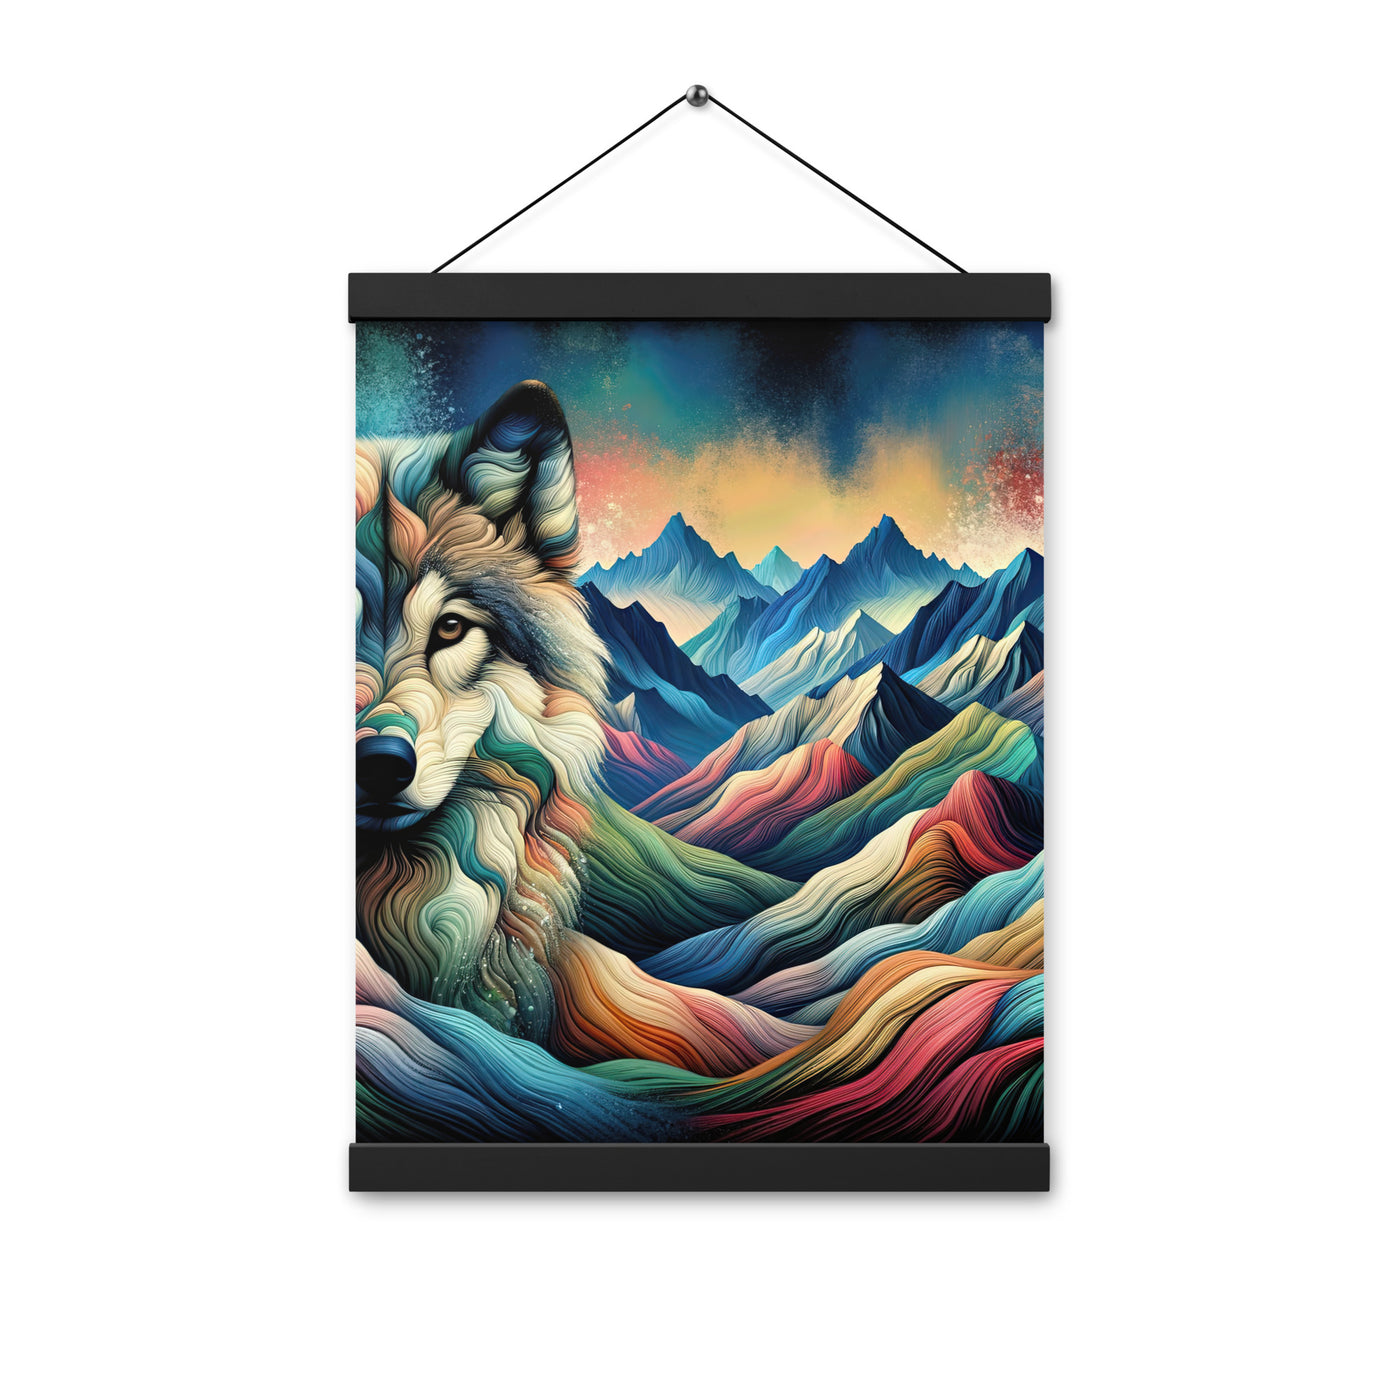 Traumhaftes Alpenpanorama mit Wolf in wechselnden Farben und Mustern (AN) - Premium Poster mit Aufhängung xxx yyy zzz 30.5 x 40.6 cm